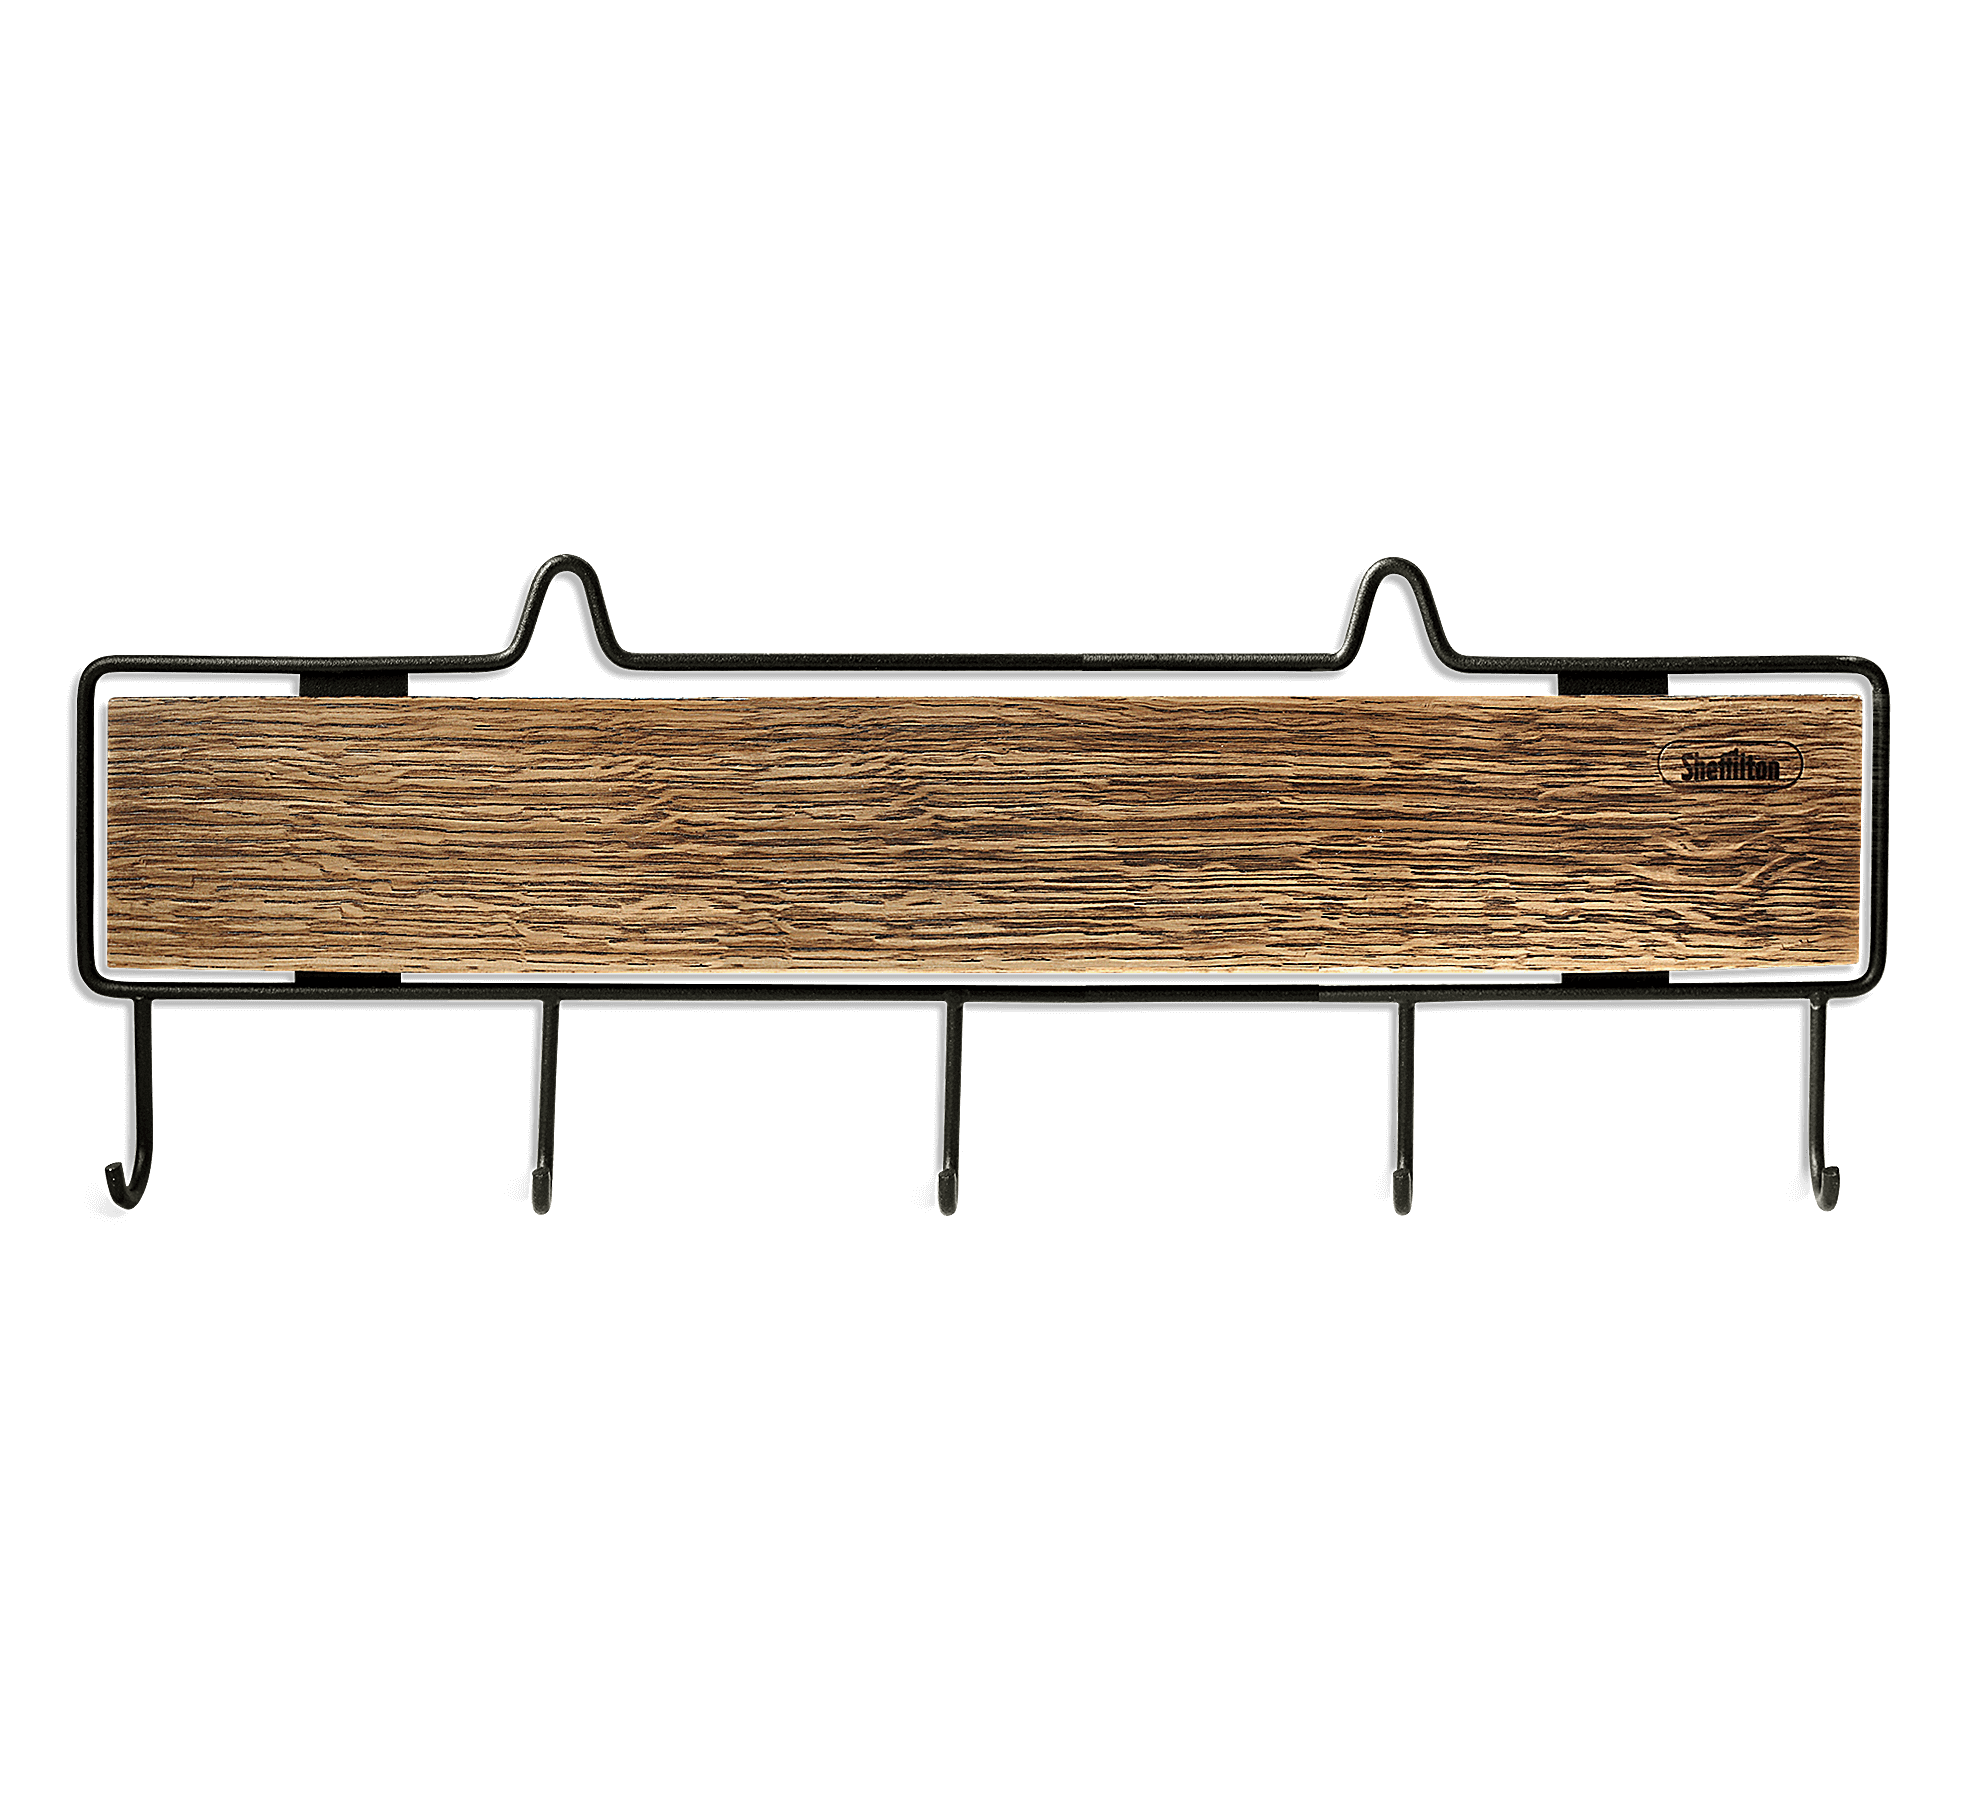 Фото - вешалка деревянная настенная sht-wh17 на пять крючков в бар или ресторан